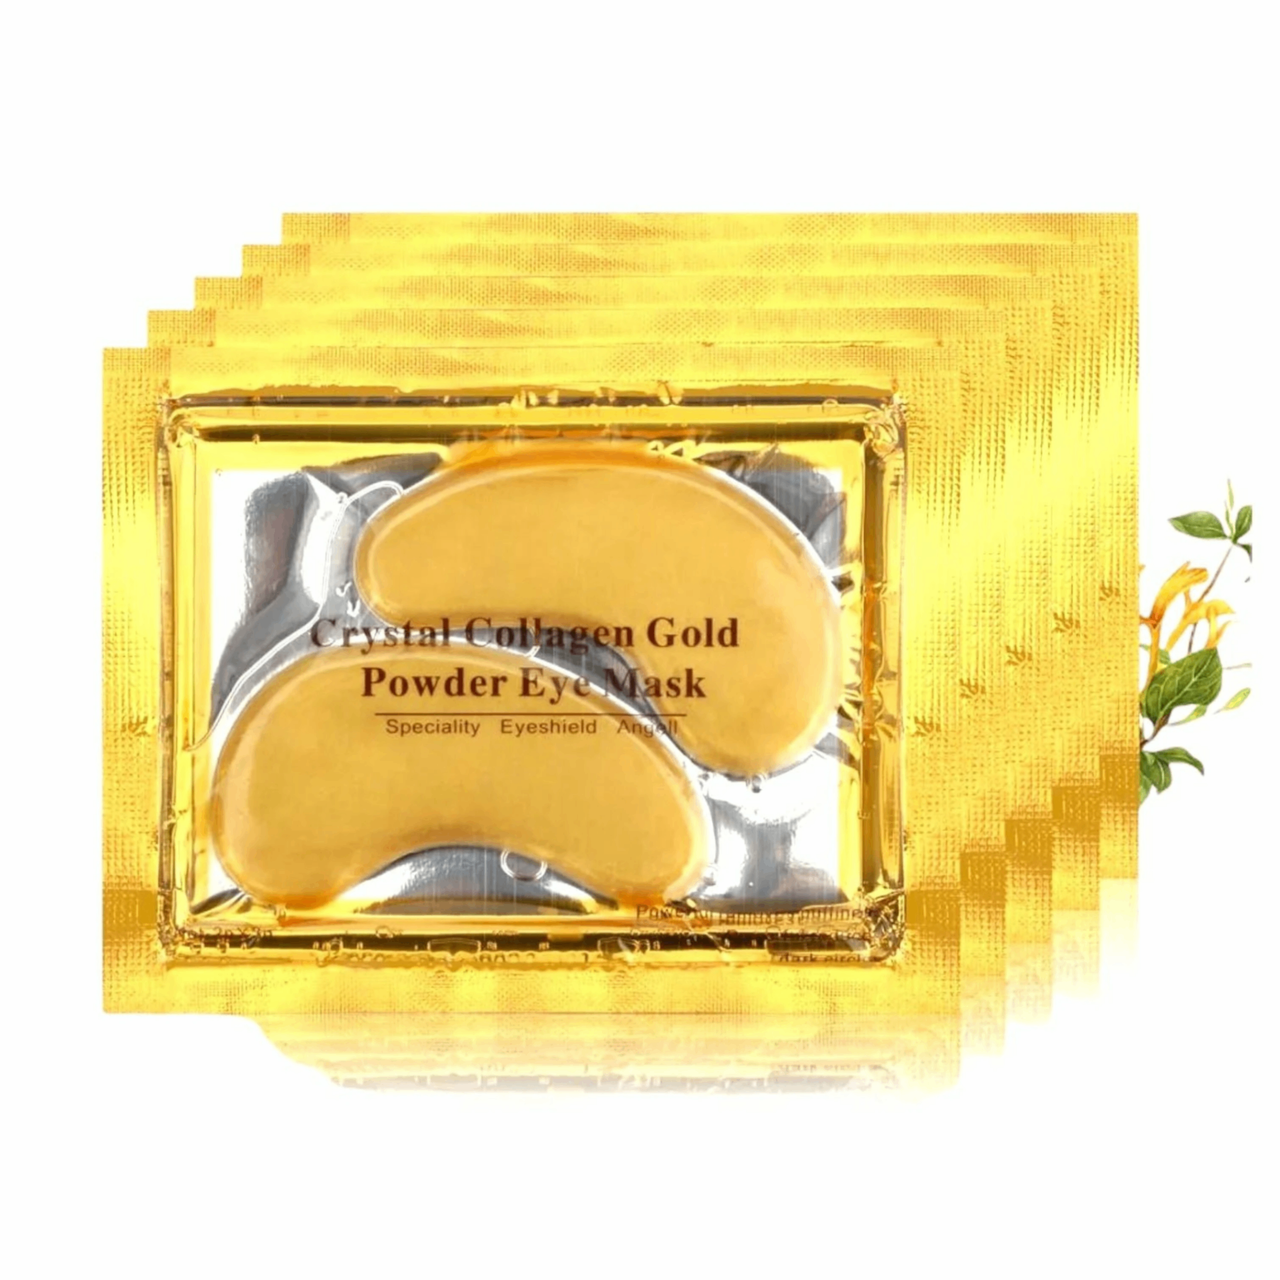 24k Crystal Collagen Gold Eye Mask package